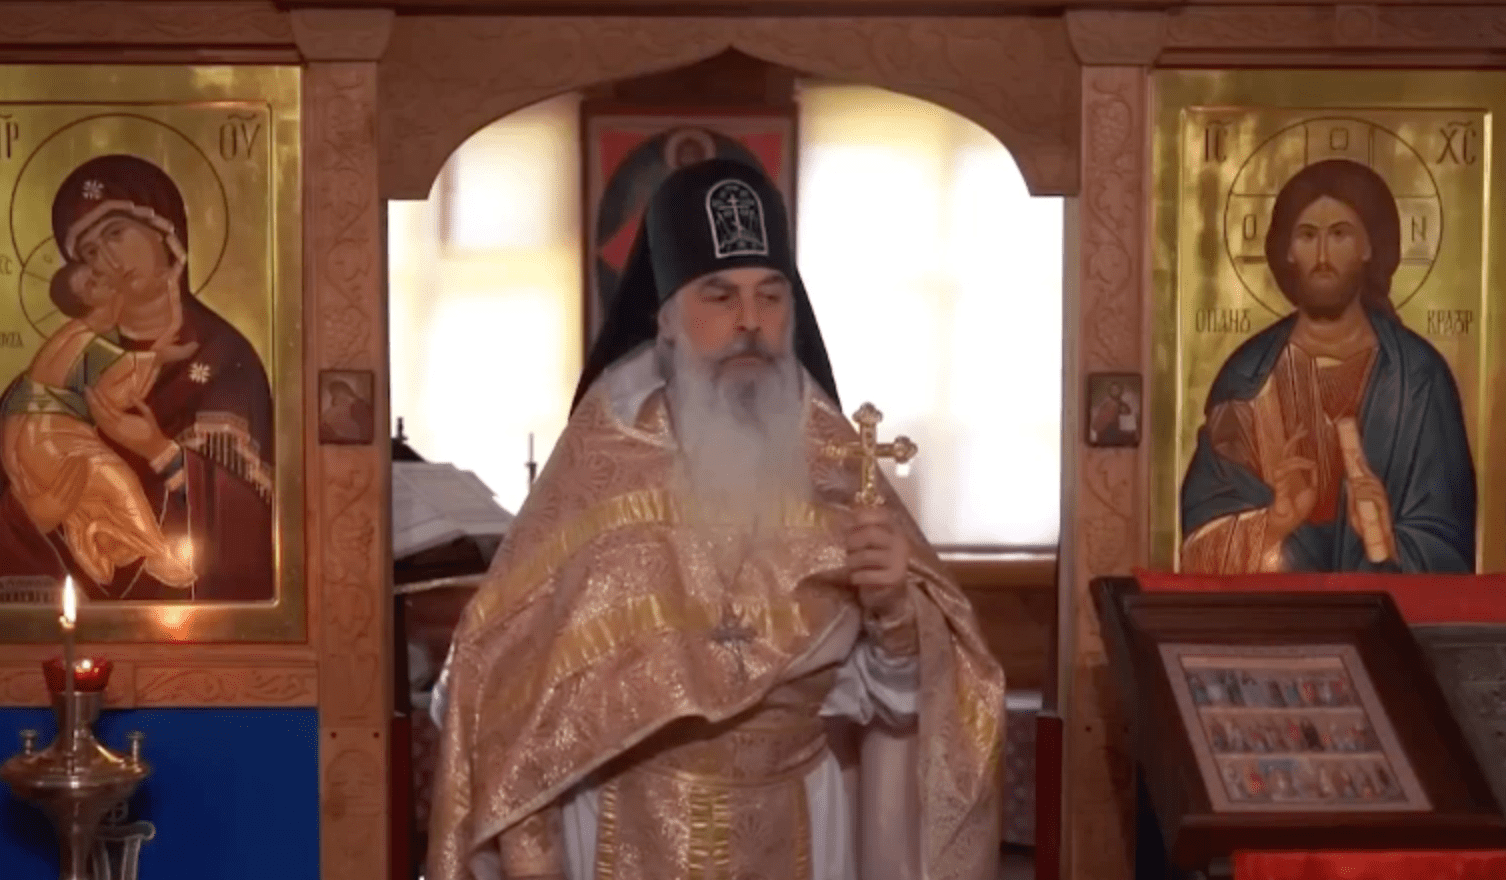 L’archimandrita antisemita: "I discendenti dagli assassini di Cristo vogliono distruggere la Russia"